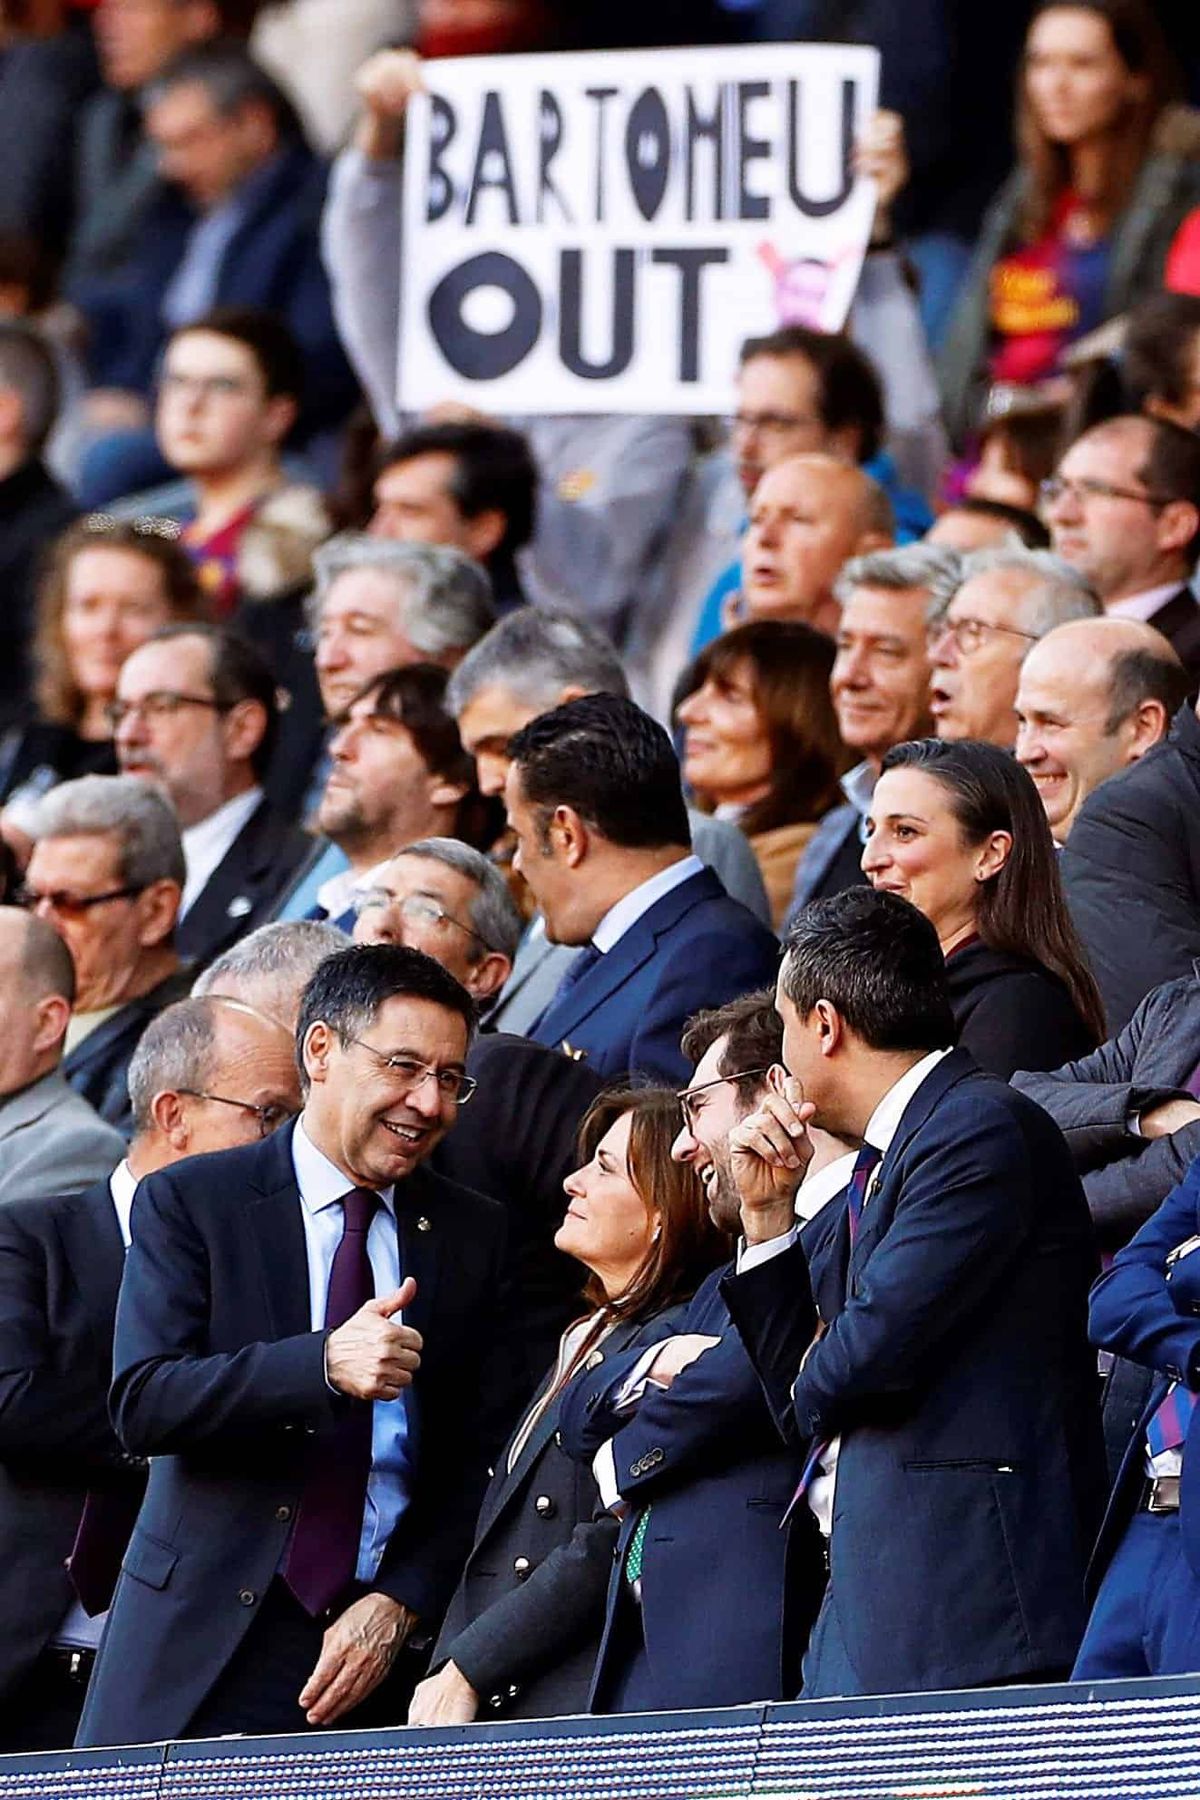 Εκλέχθηκε ο νέος πρόεδρος της Βαρκελώνης, αλλά μπορεί να πείσει τον Μέσι να παραμείνει;